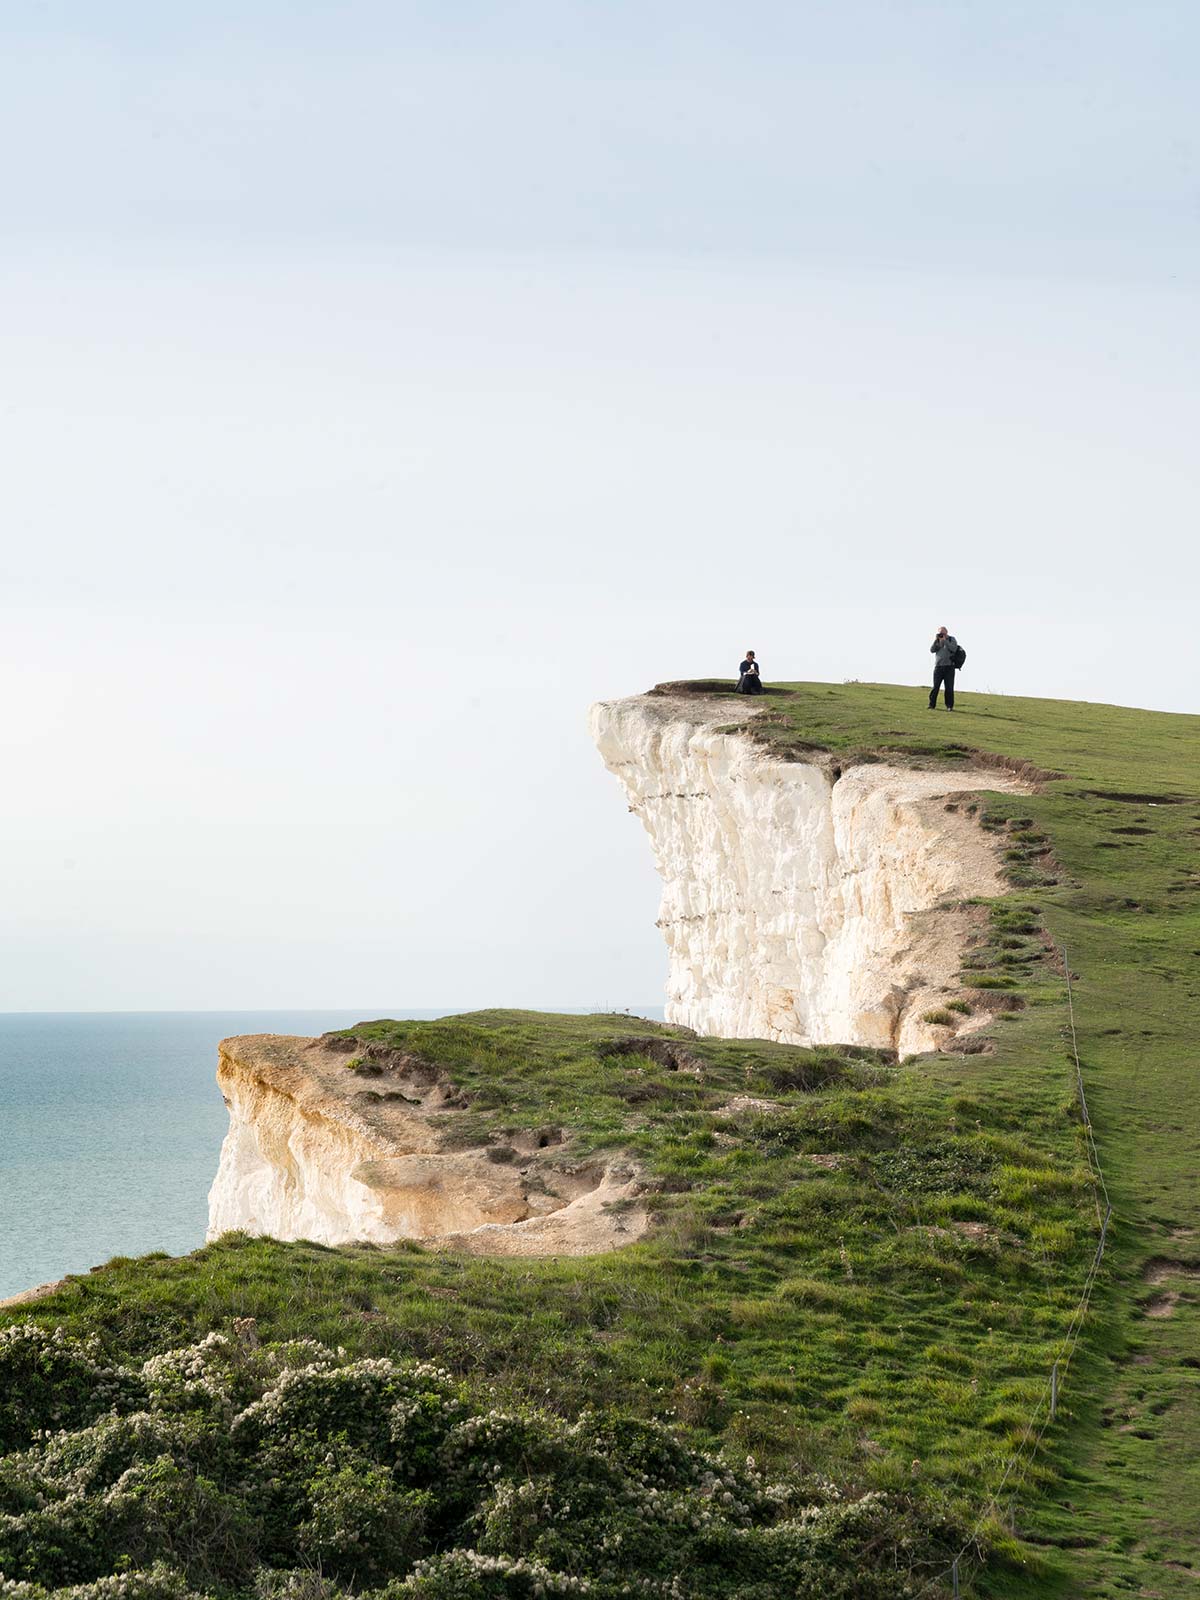 Falaises des Seven Sisters, East Sussex, Angleterre, Royaume-Uni / Seven Sisters cliffs, East Sussex, England, UK